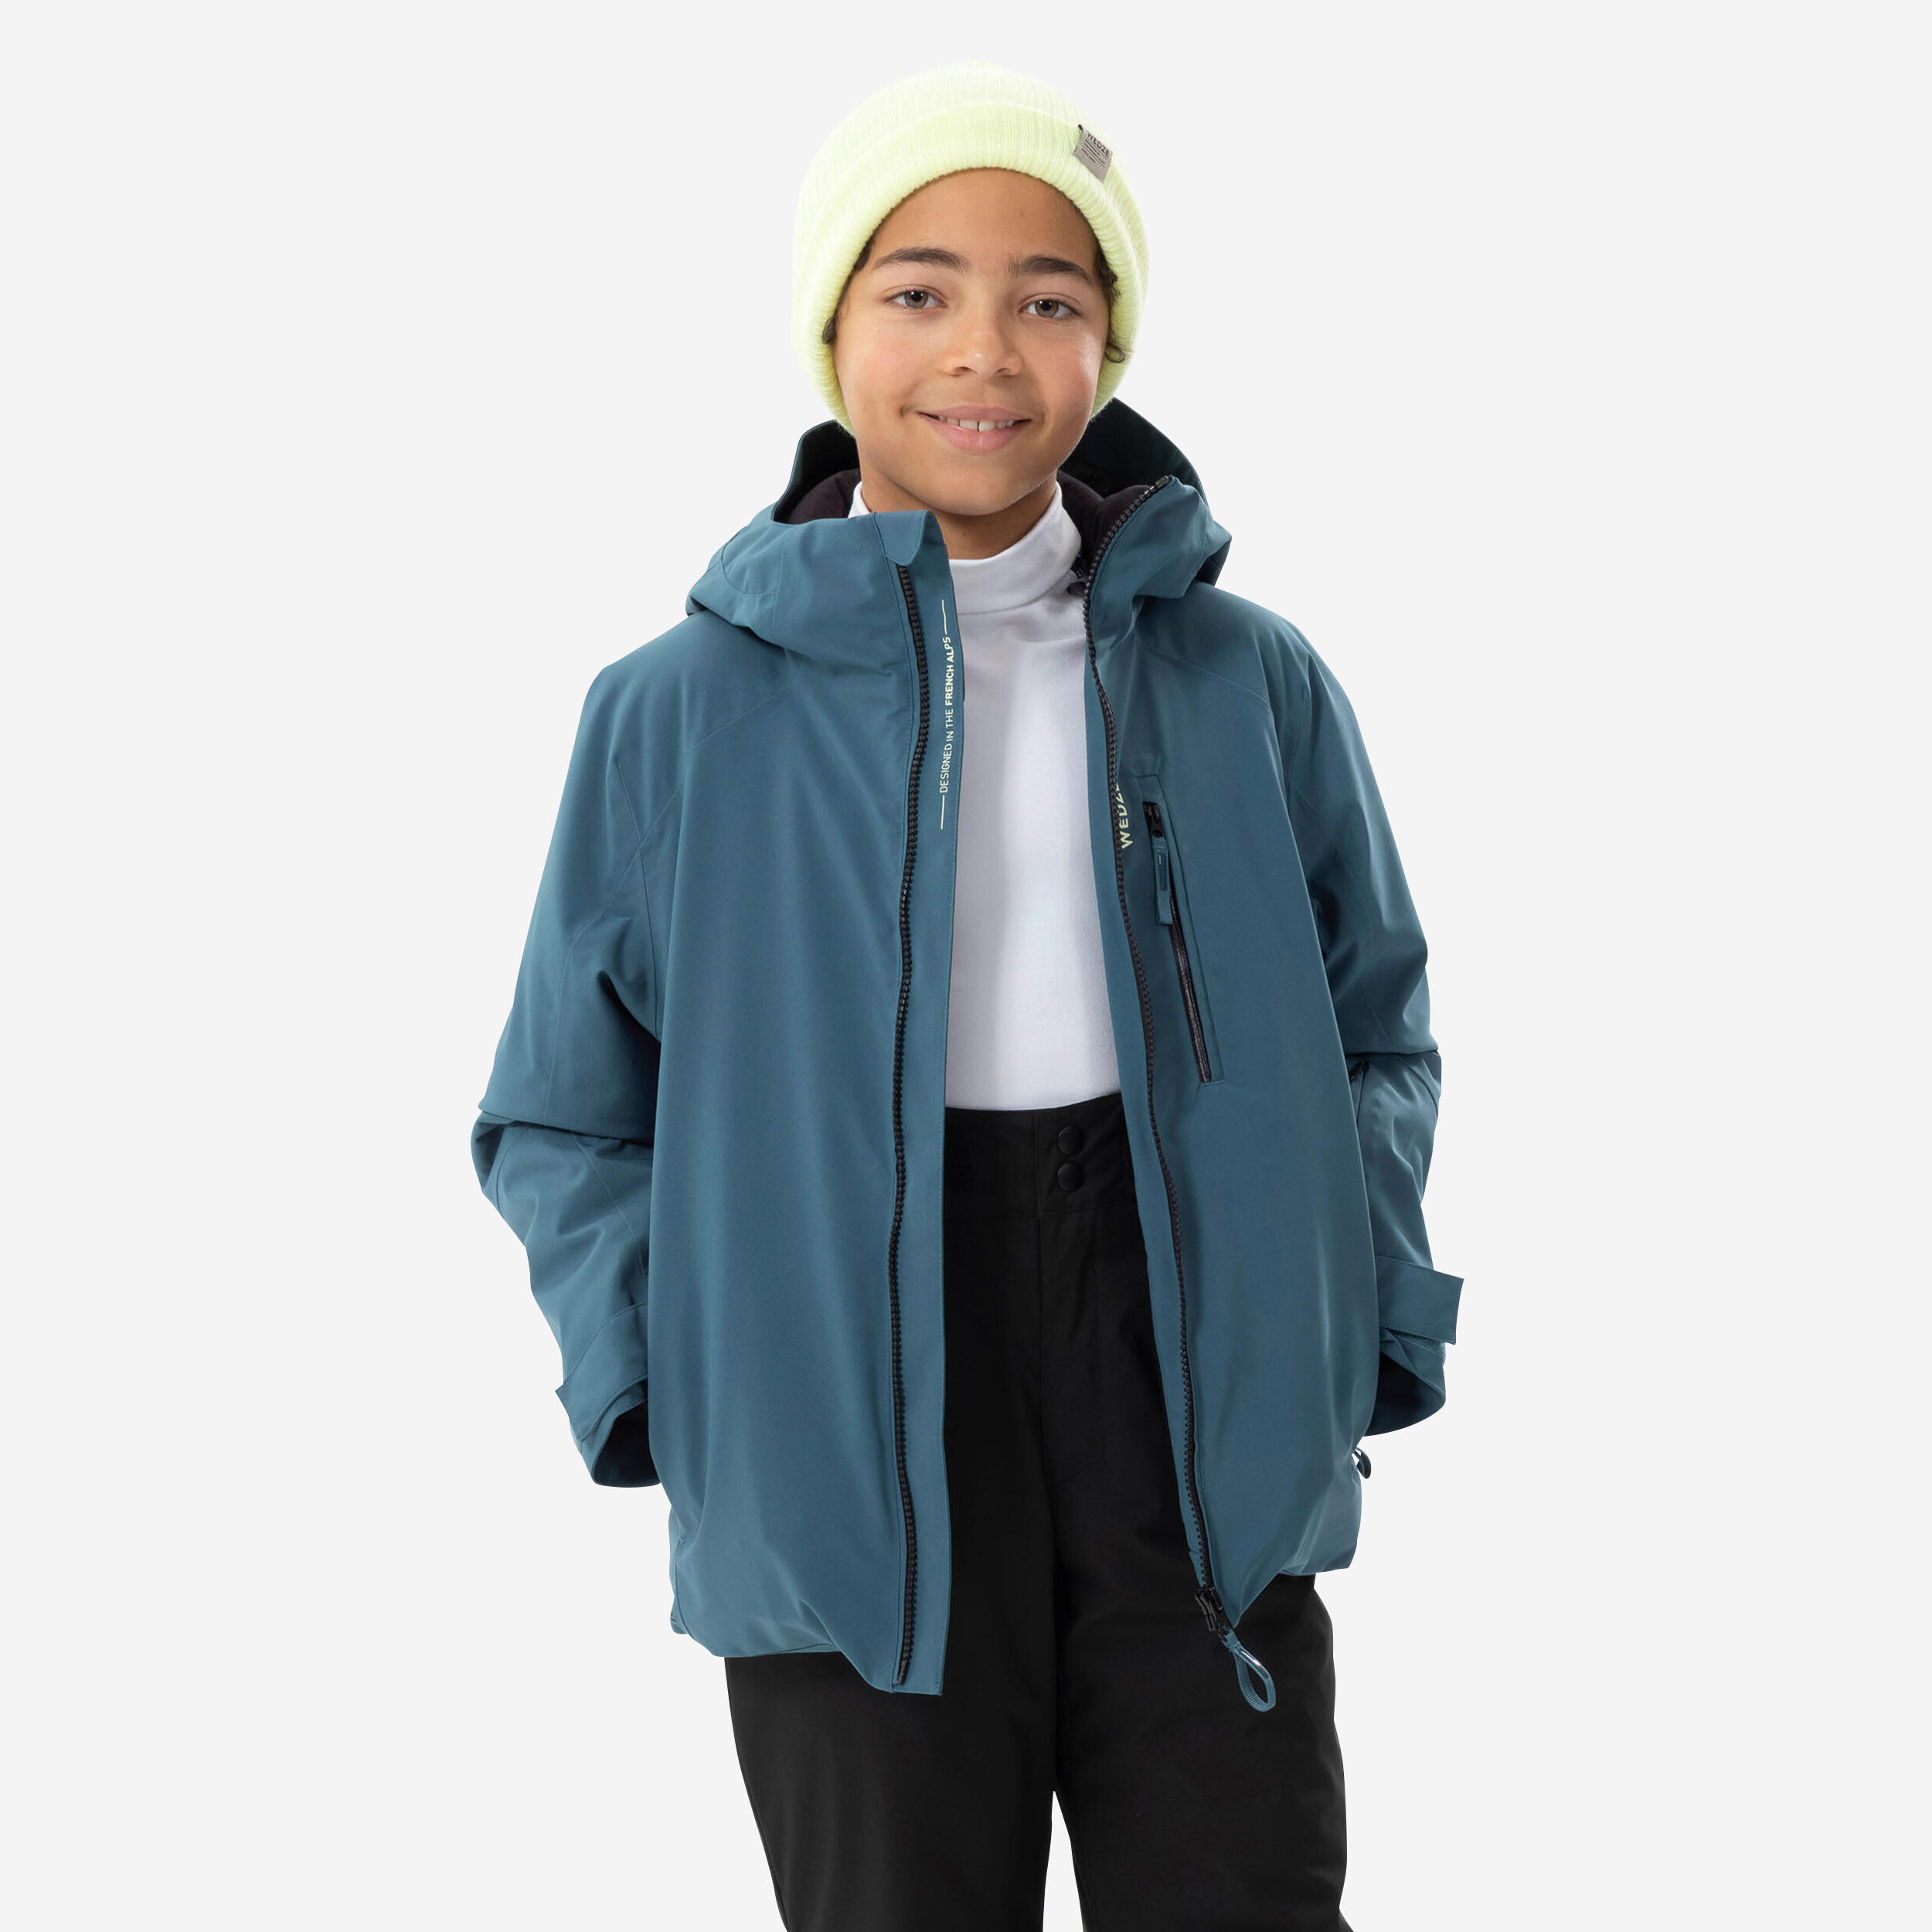 Kid's Waterproof Shell Jacket Purple – OAKI